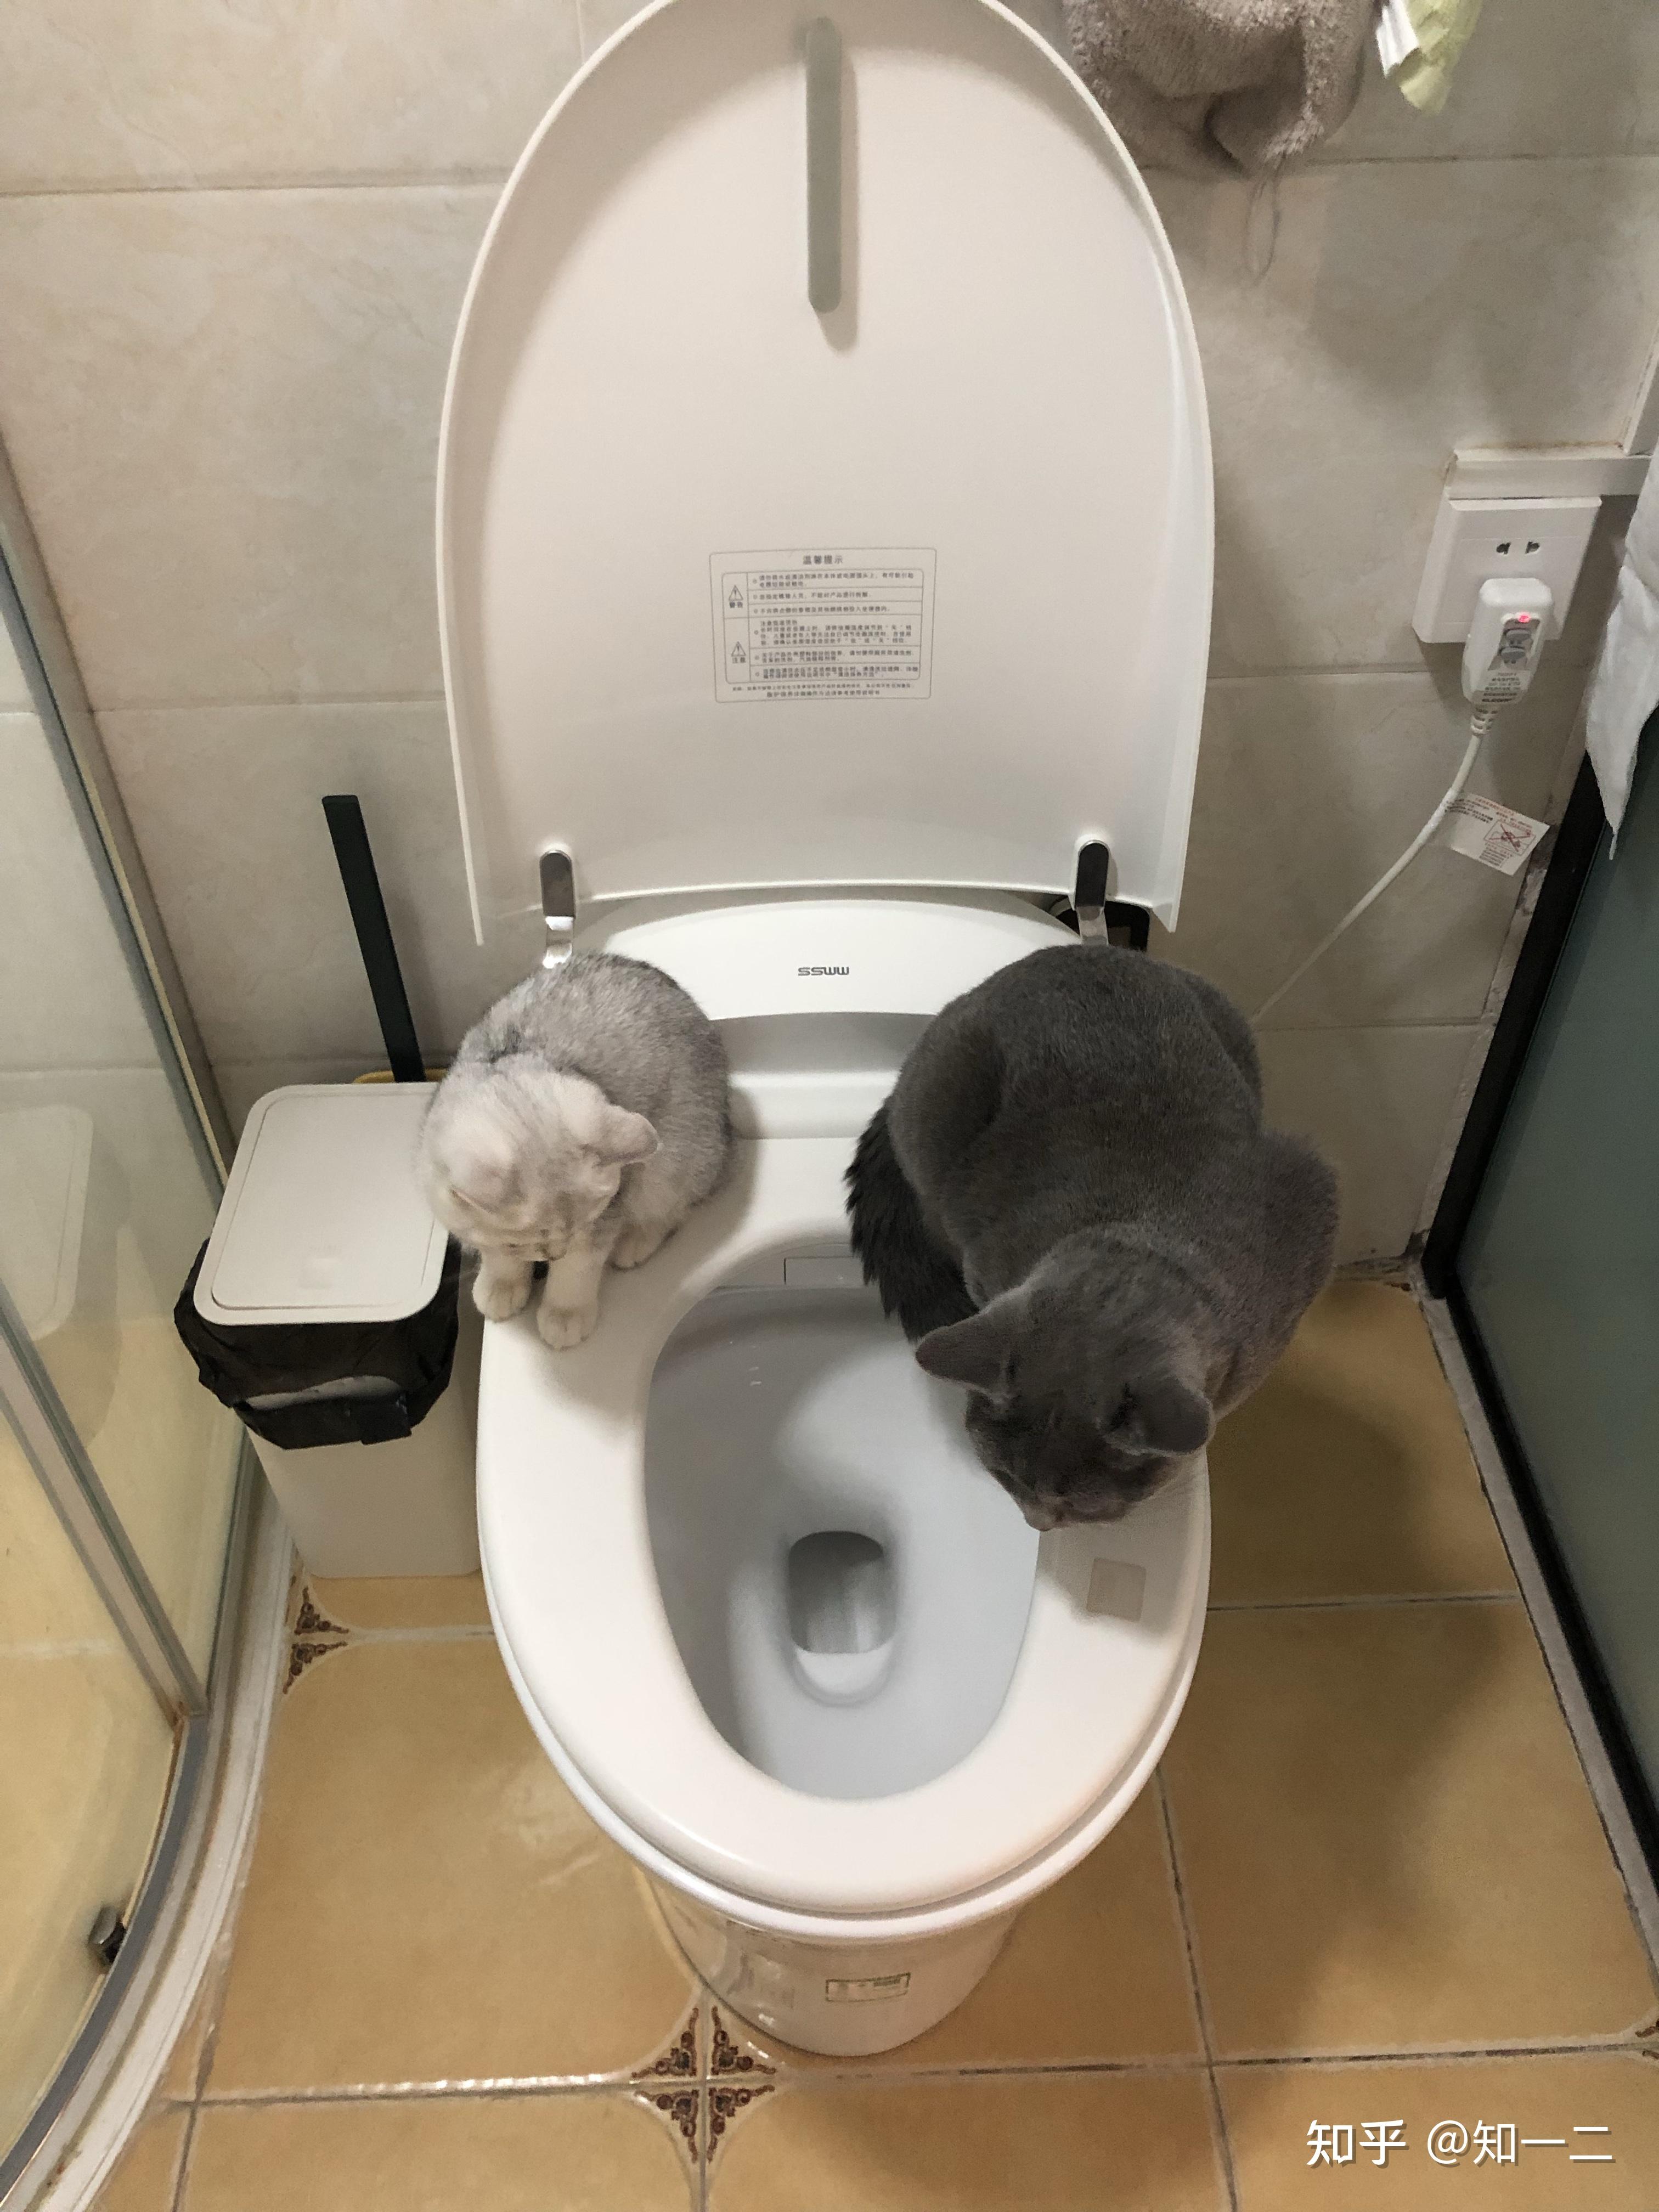 猫马桶训练器 猫咪坐便器 猫厕所垫可放猫砂盘坐便训练器宠物用品-阿里巴巴